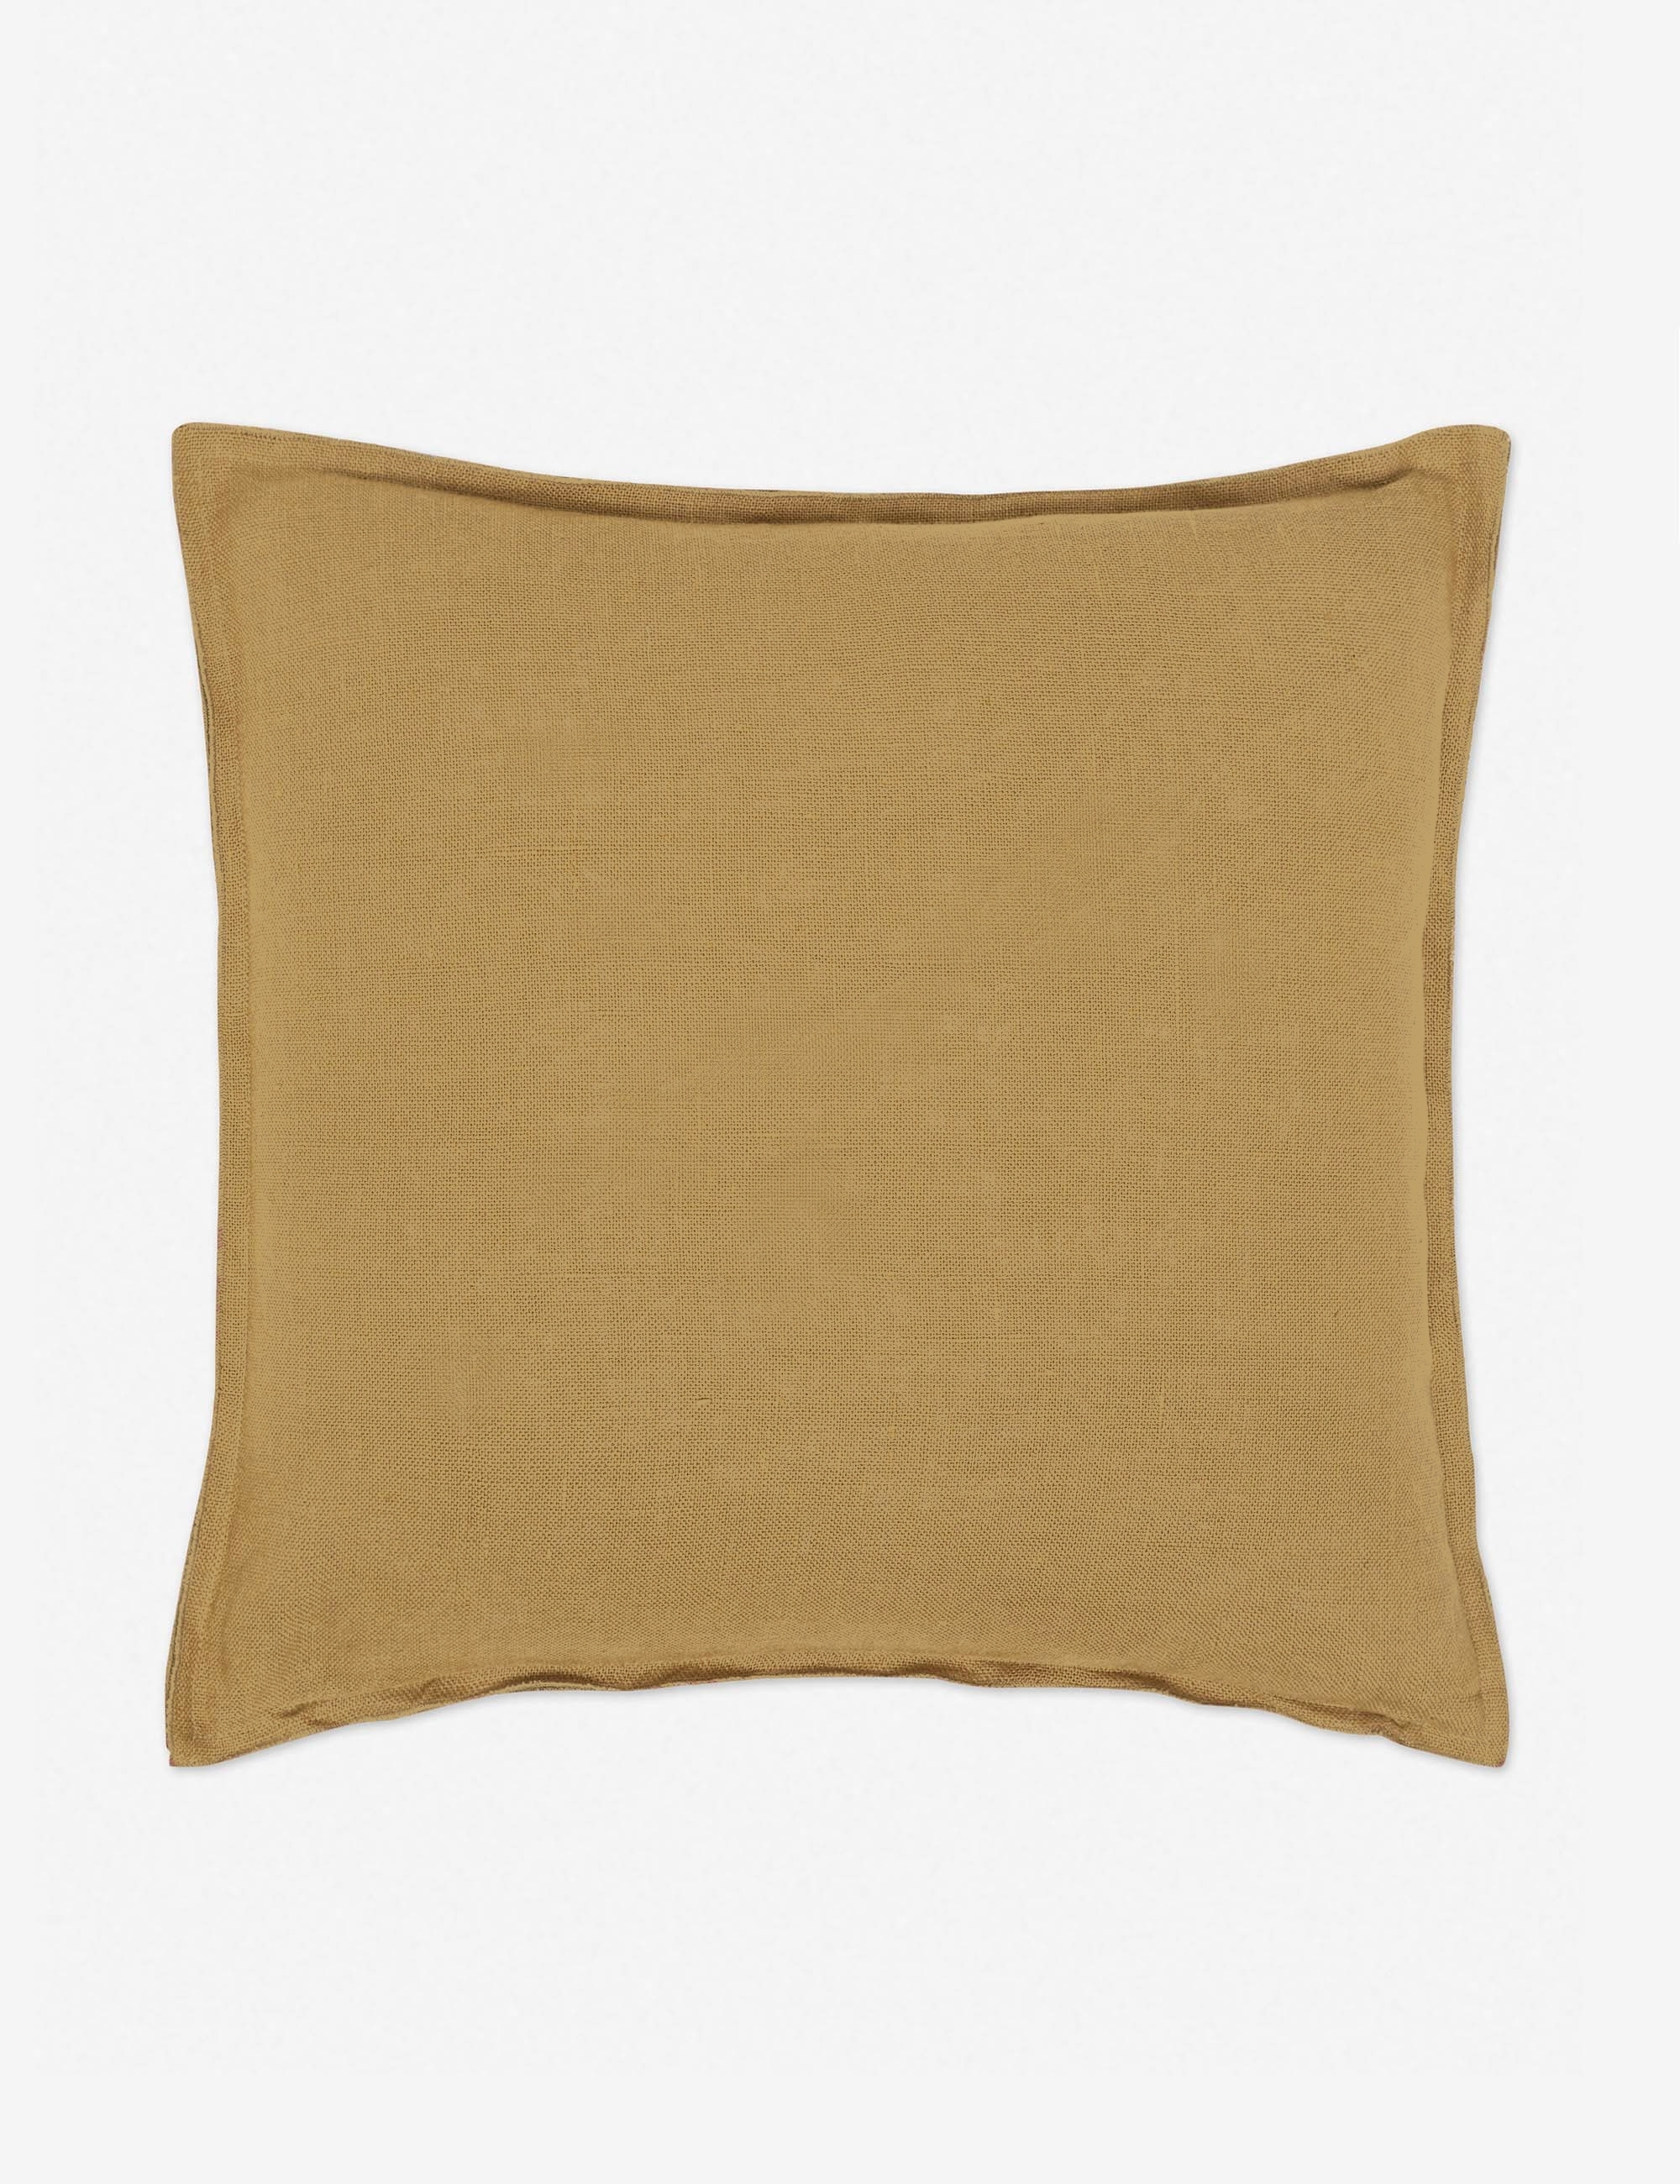 Arlo Linen Pillow, Marigold - Image 0